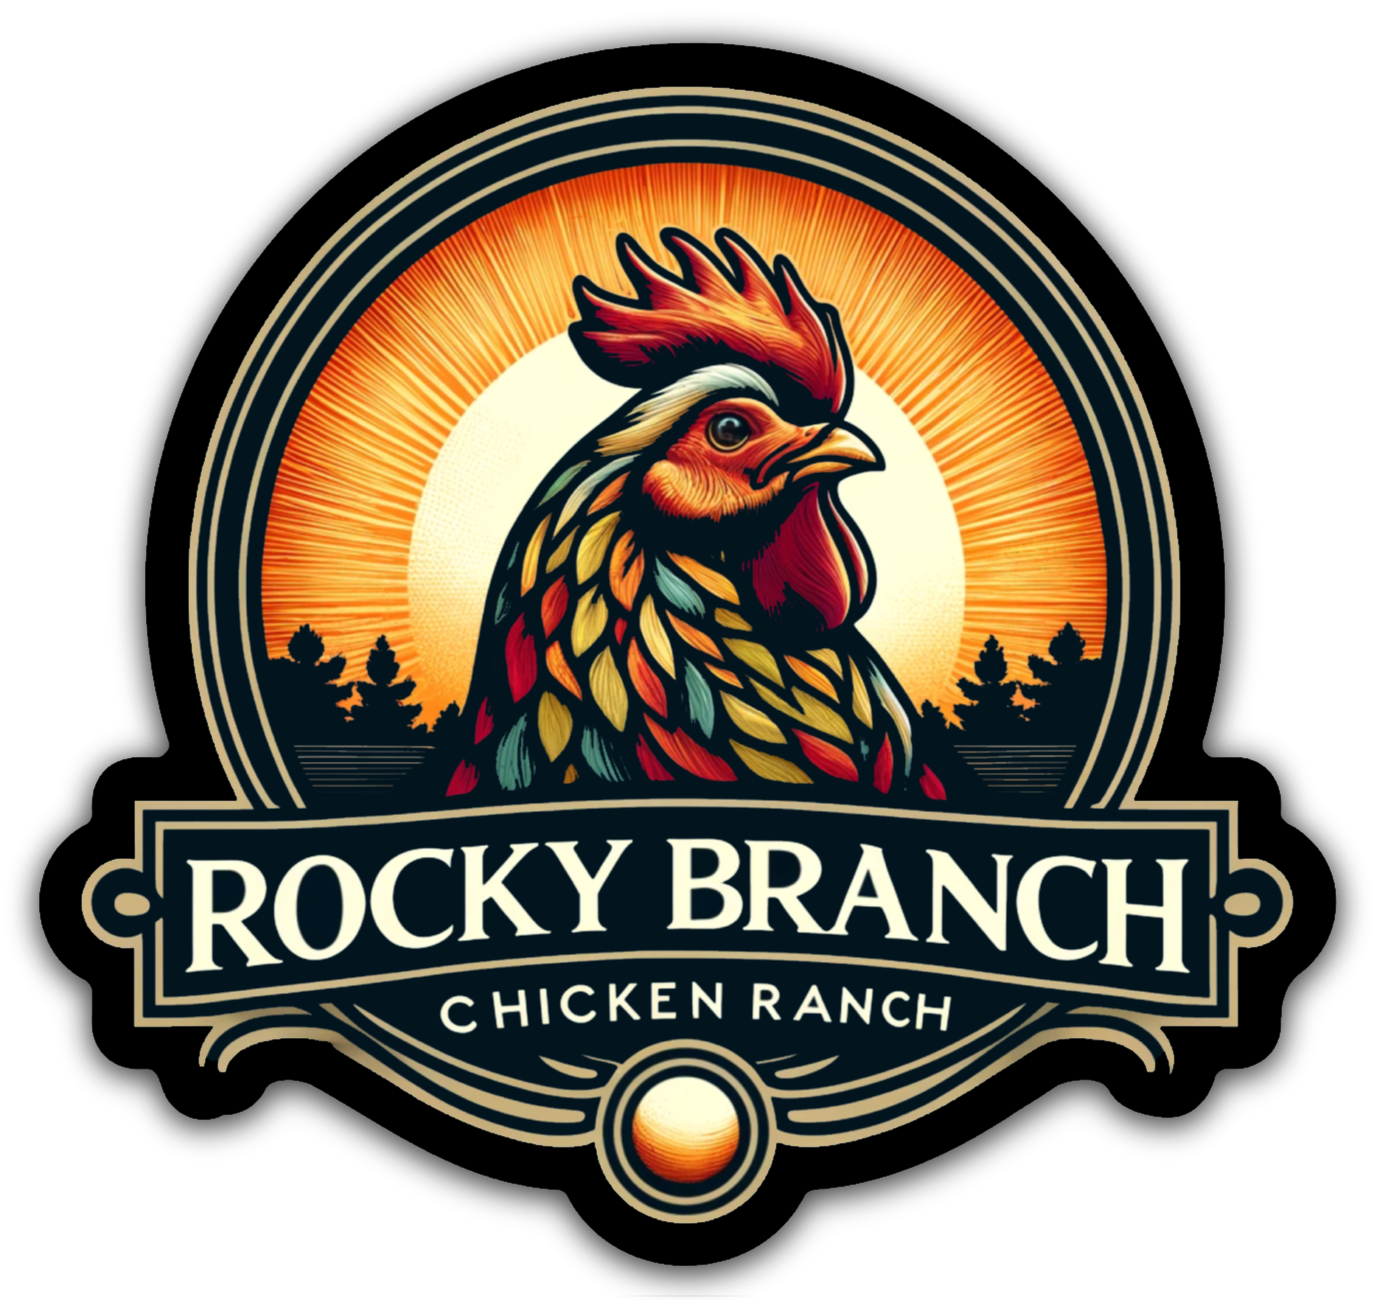 Rocky Branch Chicken Ranch Logo